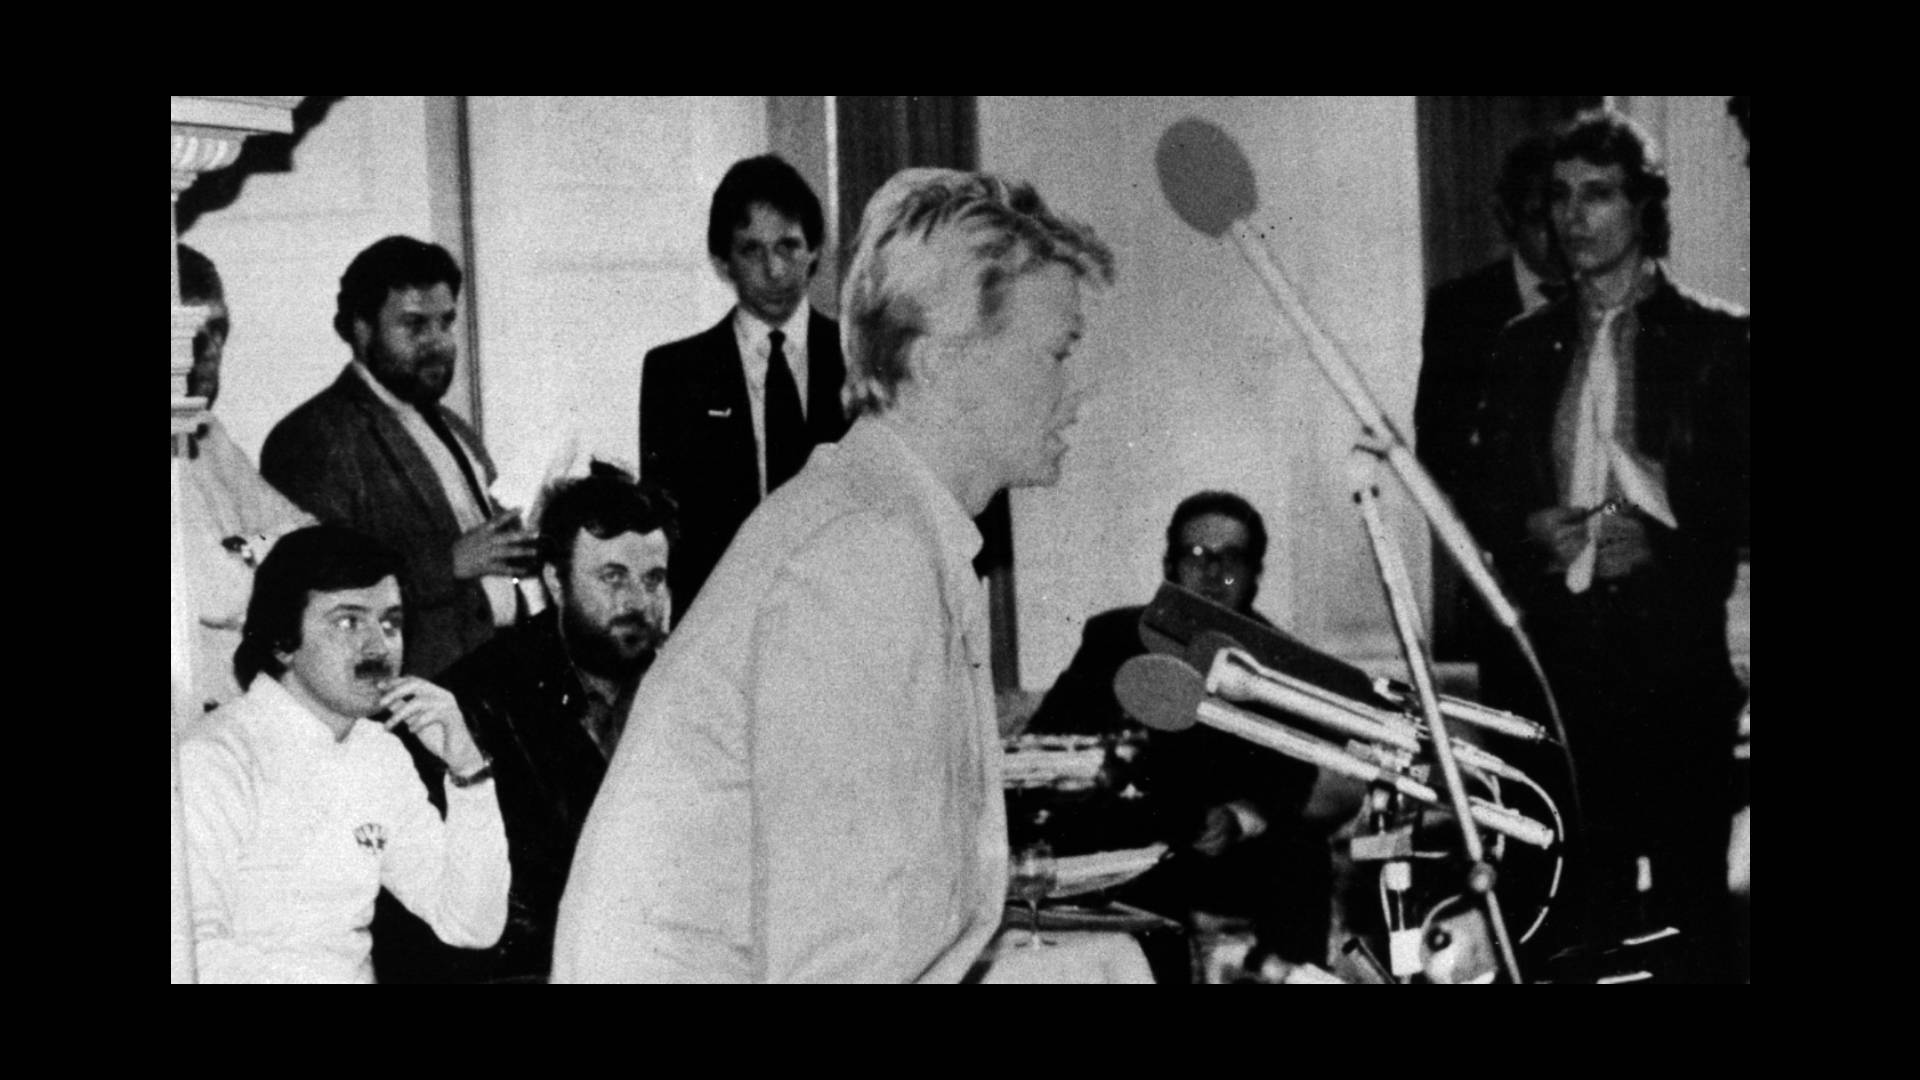 Ljude je zanimalo što Bowie pije i orgija li. Prije intervjua rekao mi je: Ante, imaš odlično odijelo